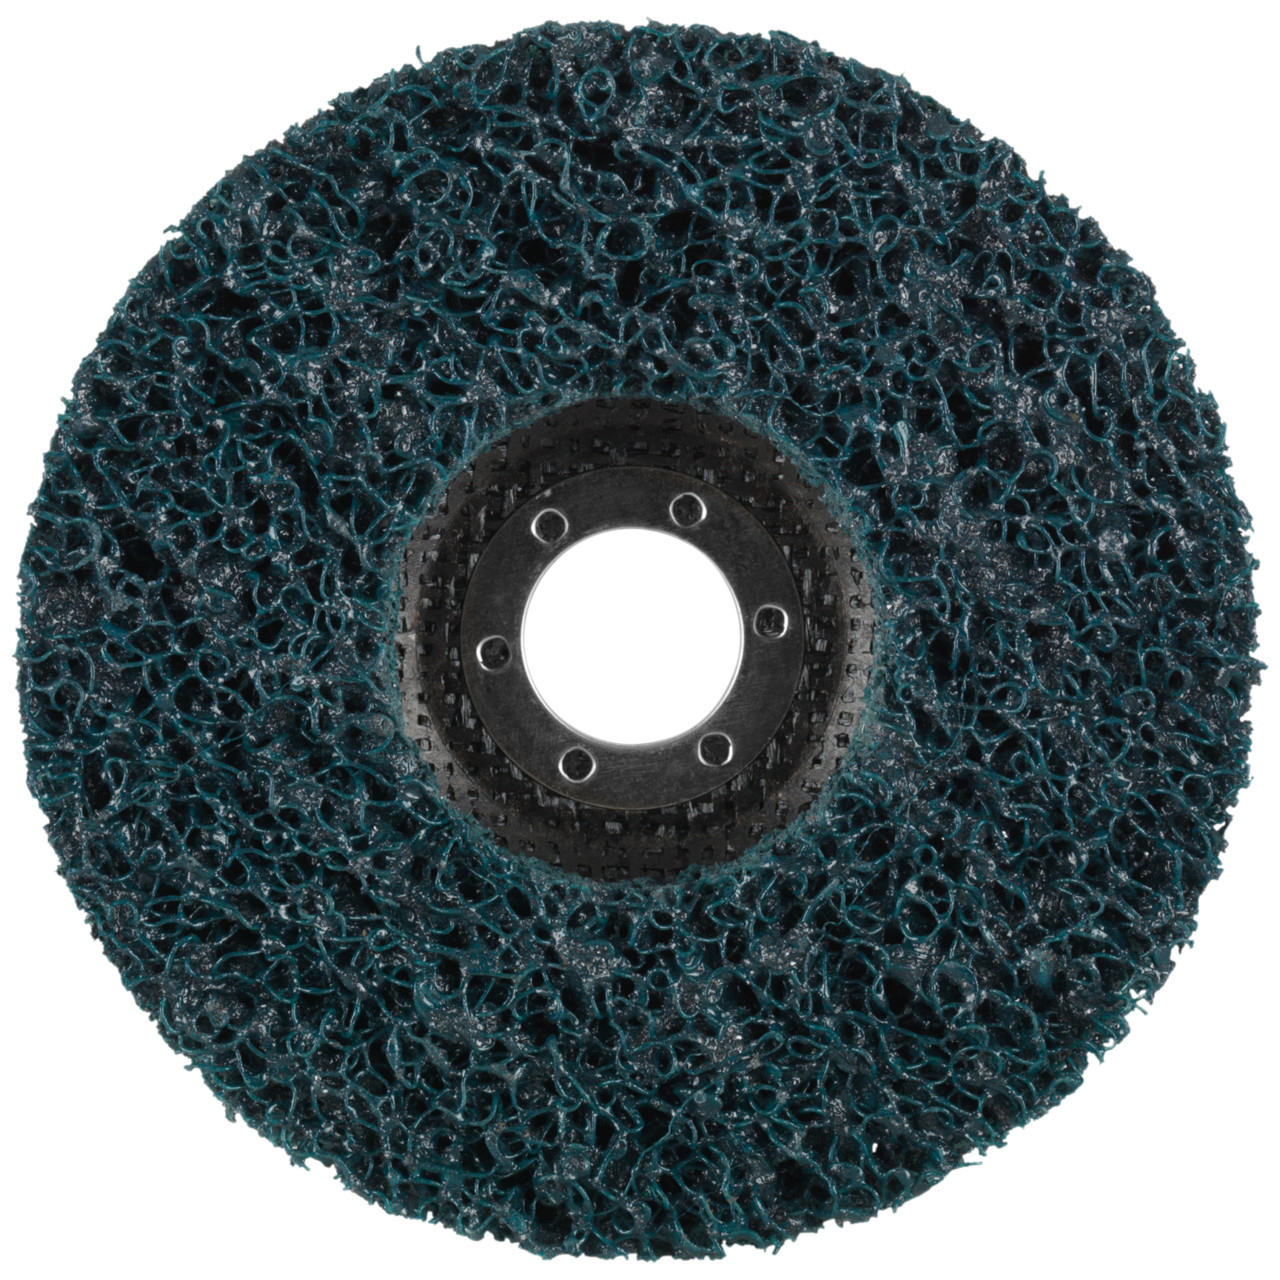 Tyrolit Disque de nettoyage grossier DxH 115x22,2 Utilisation universelle, C GROB, forme : 28- (disque de nettoyage grossier), art. 898014